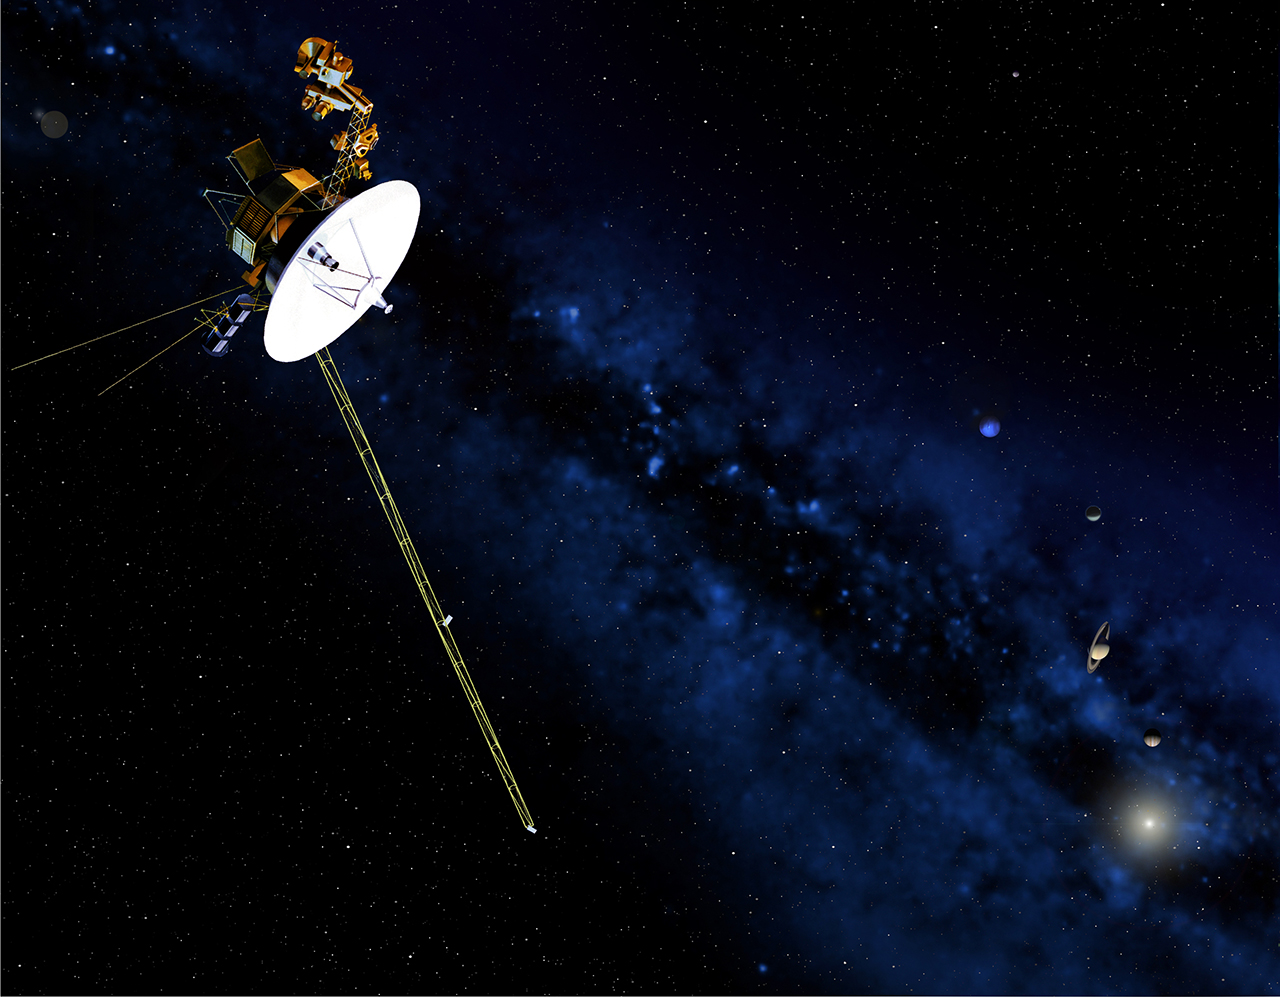 المركبة فويجر 2 تتجاوز معركة ضارية بين الرياح الشمسية والأشعة الكونية